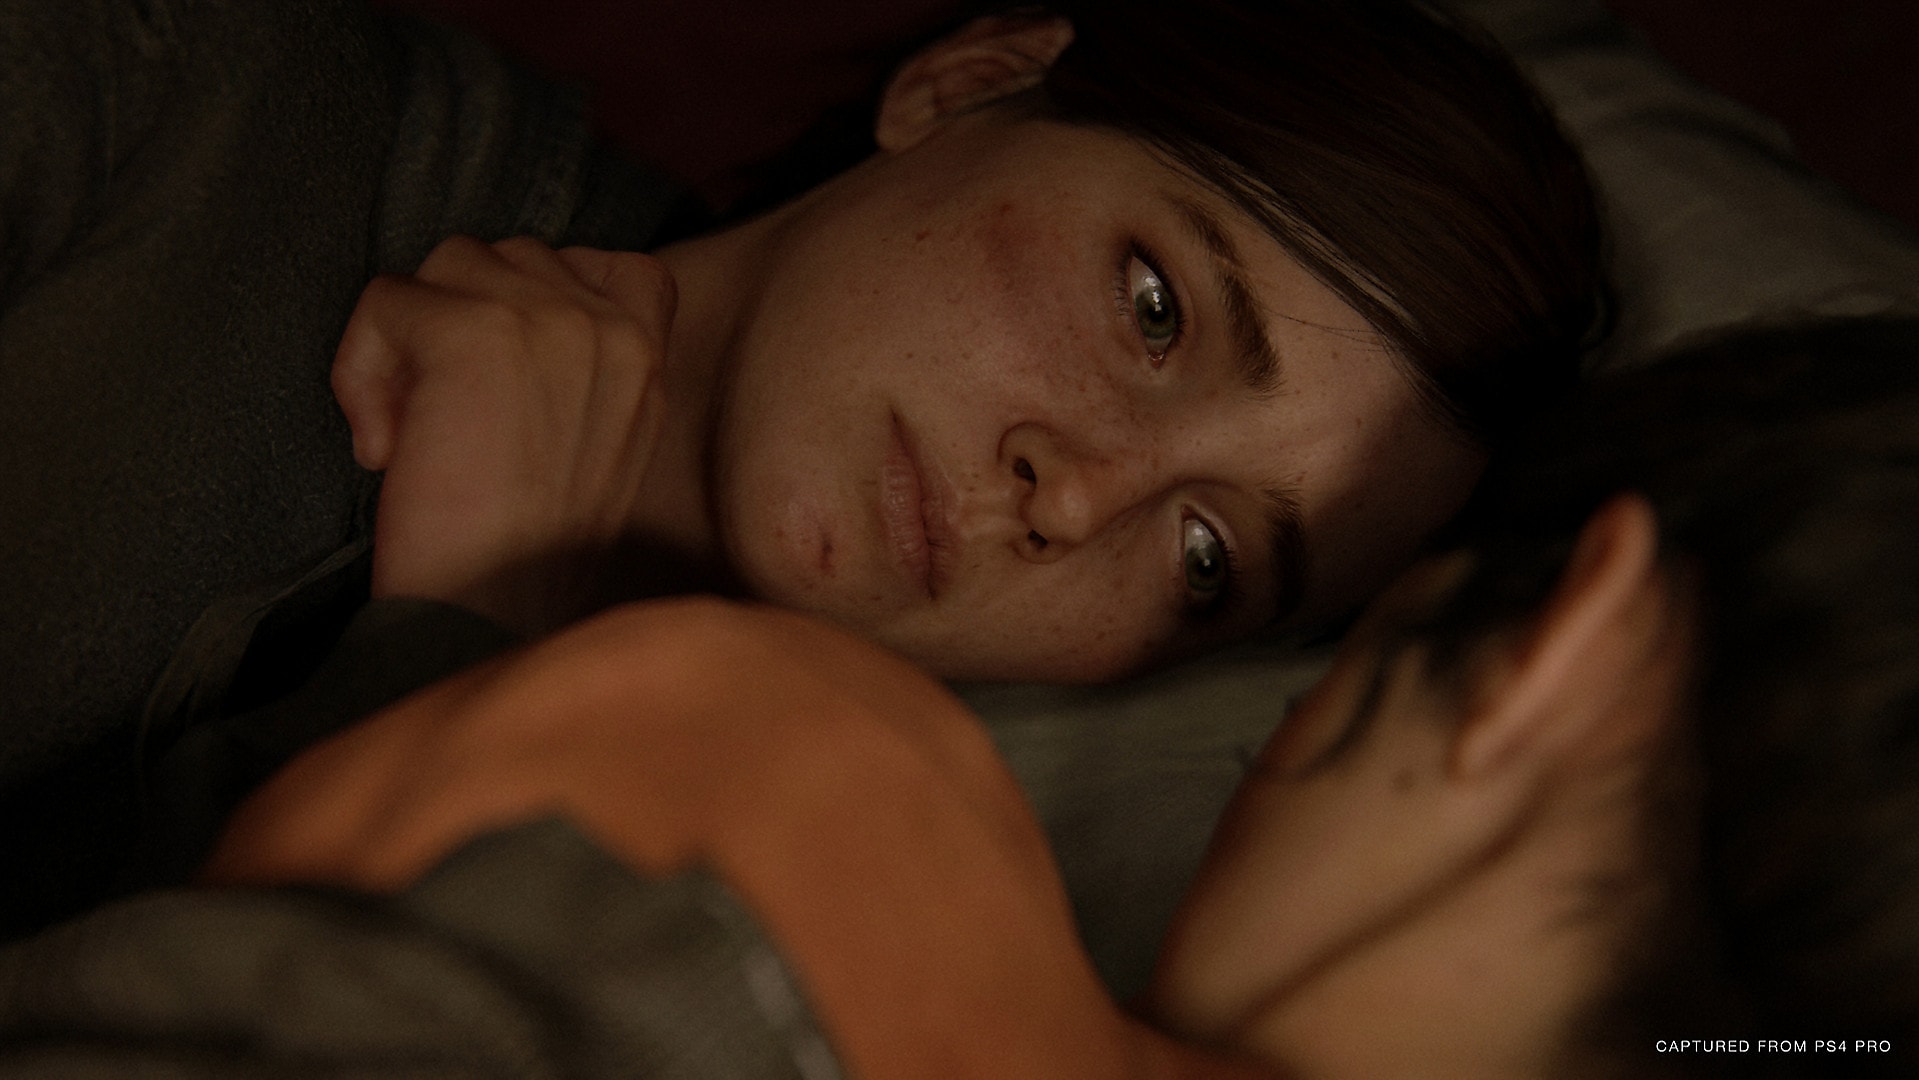 The Last of Us Part 2 ถูกสั่งห้ามวางจำหน่ายในประเทศแถบตะวันออกกลาง เพราะมีเนื้อหาเกี่ยวกับ LGBT